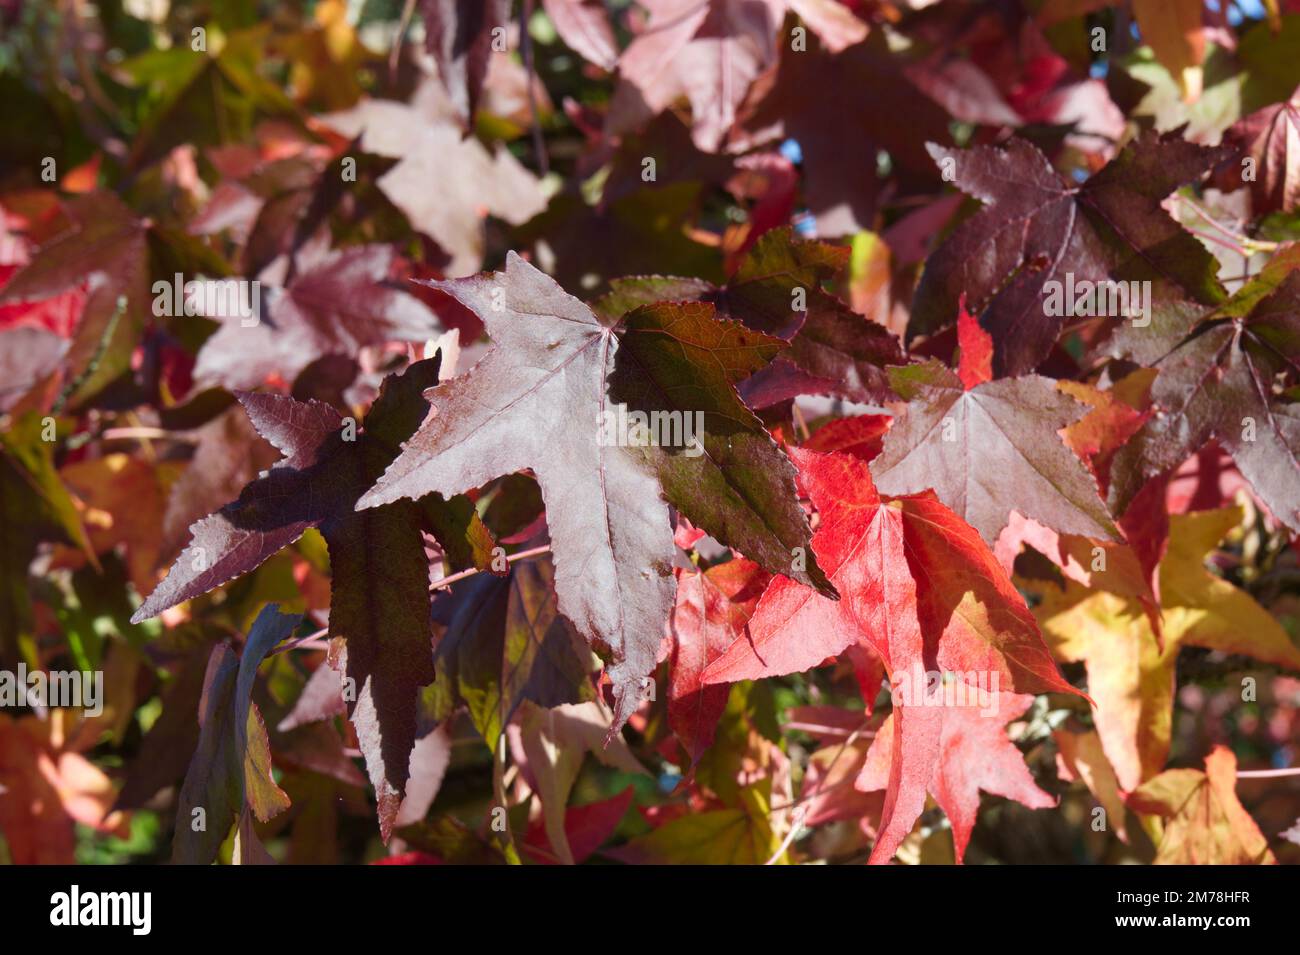 Feuillage d'automne de Liquidambar styraciflua / gomme sucrée dans le jardin du Royaume-Uni octobre Banque D'Images